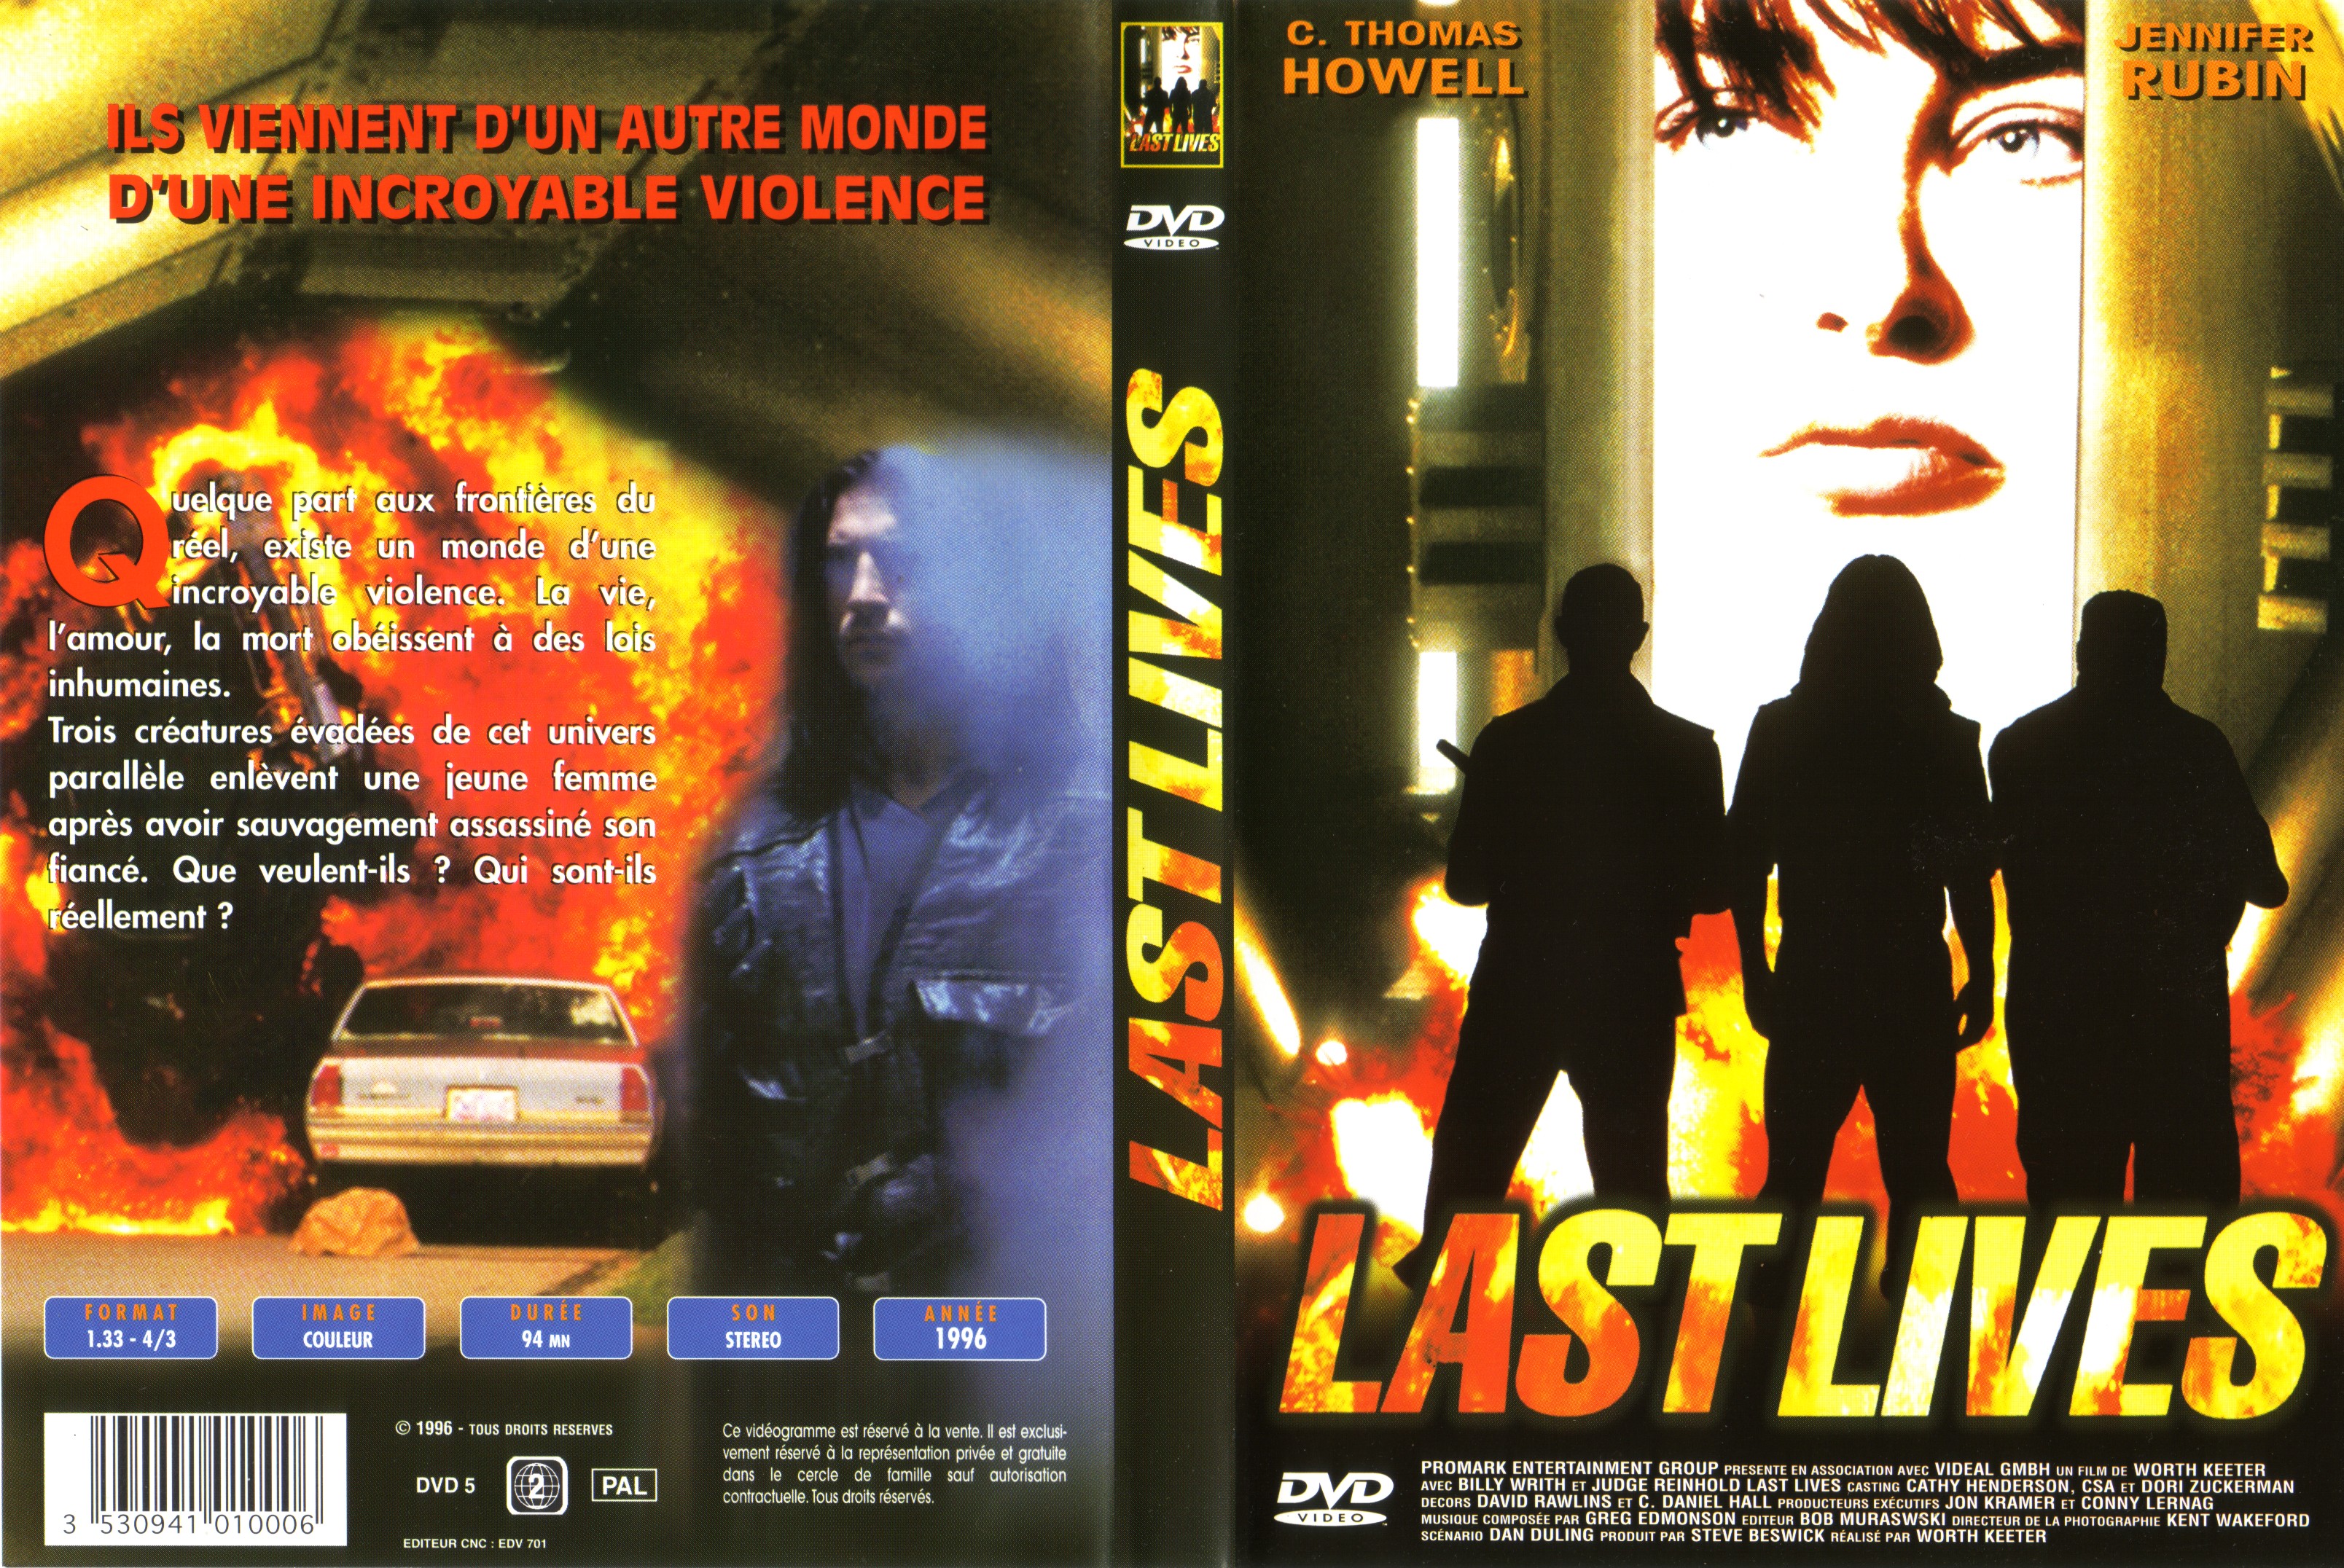 Jaquette DVD Last lives